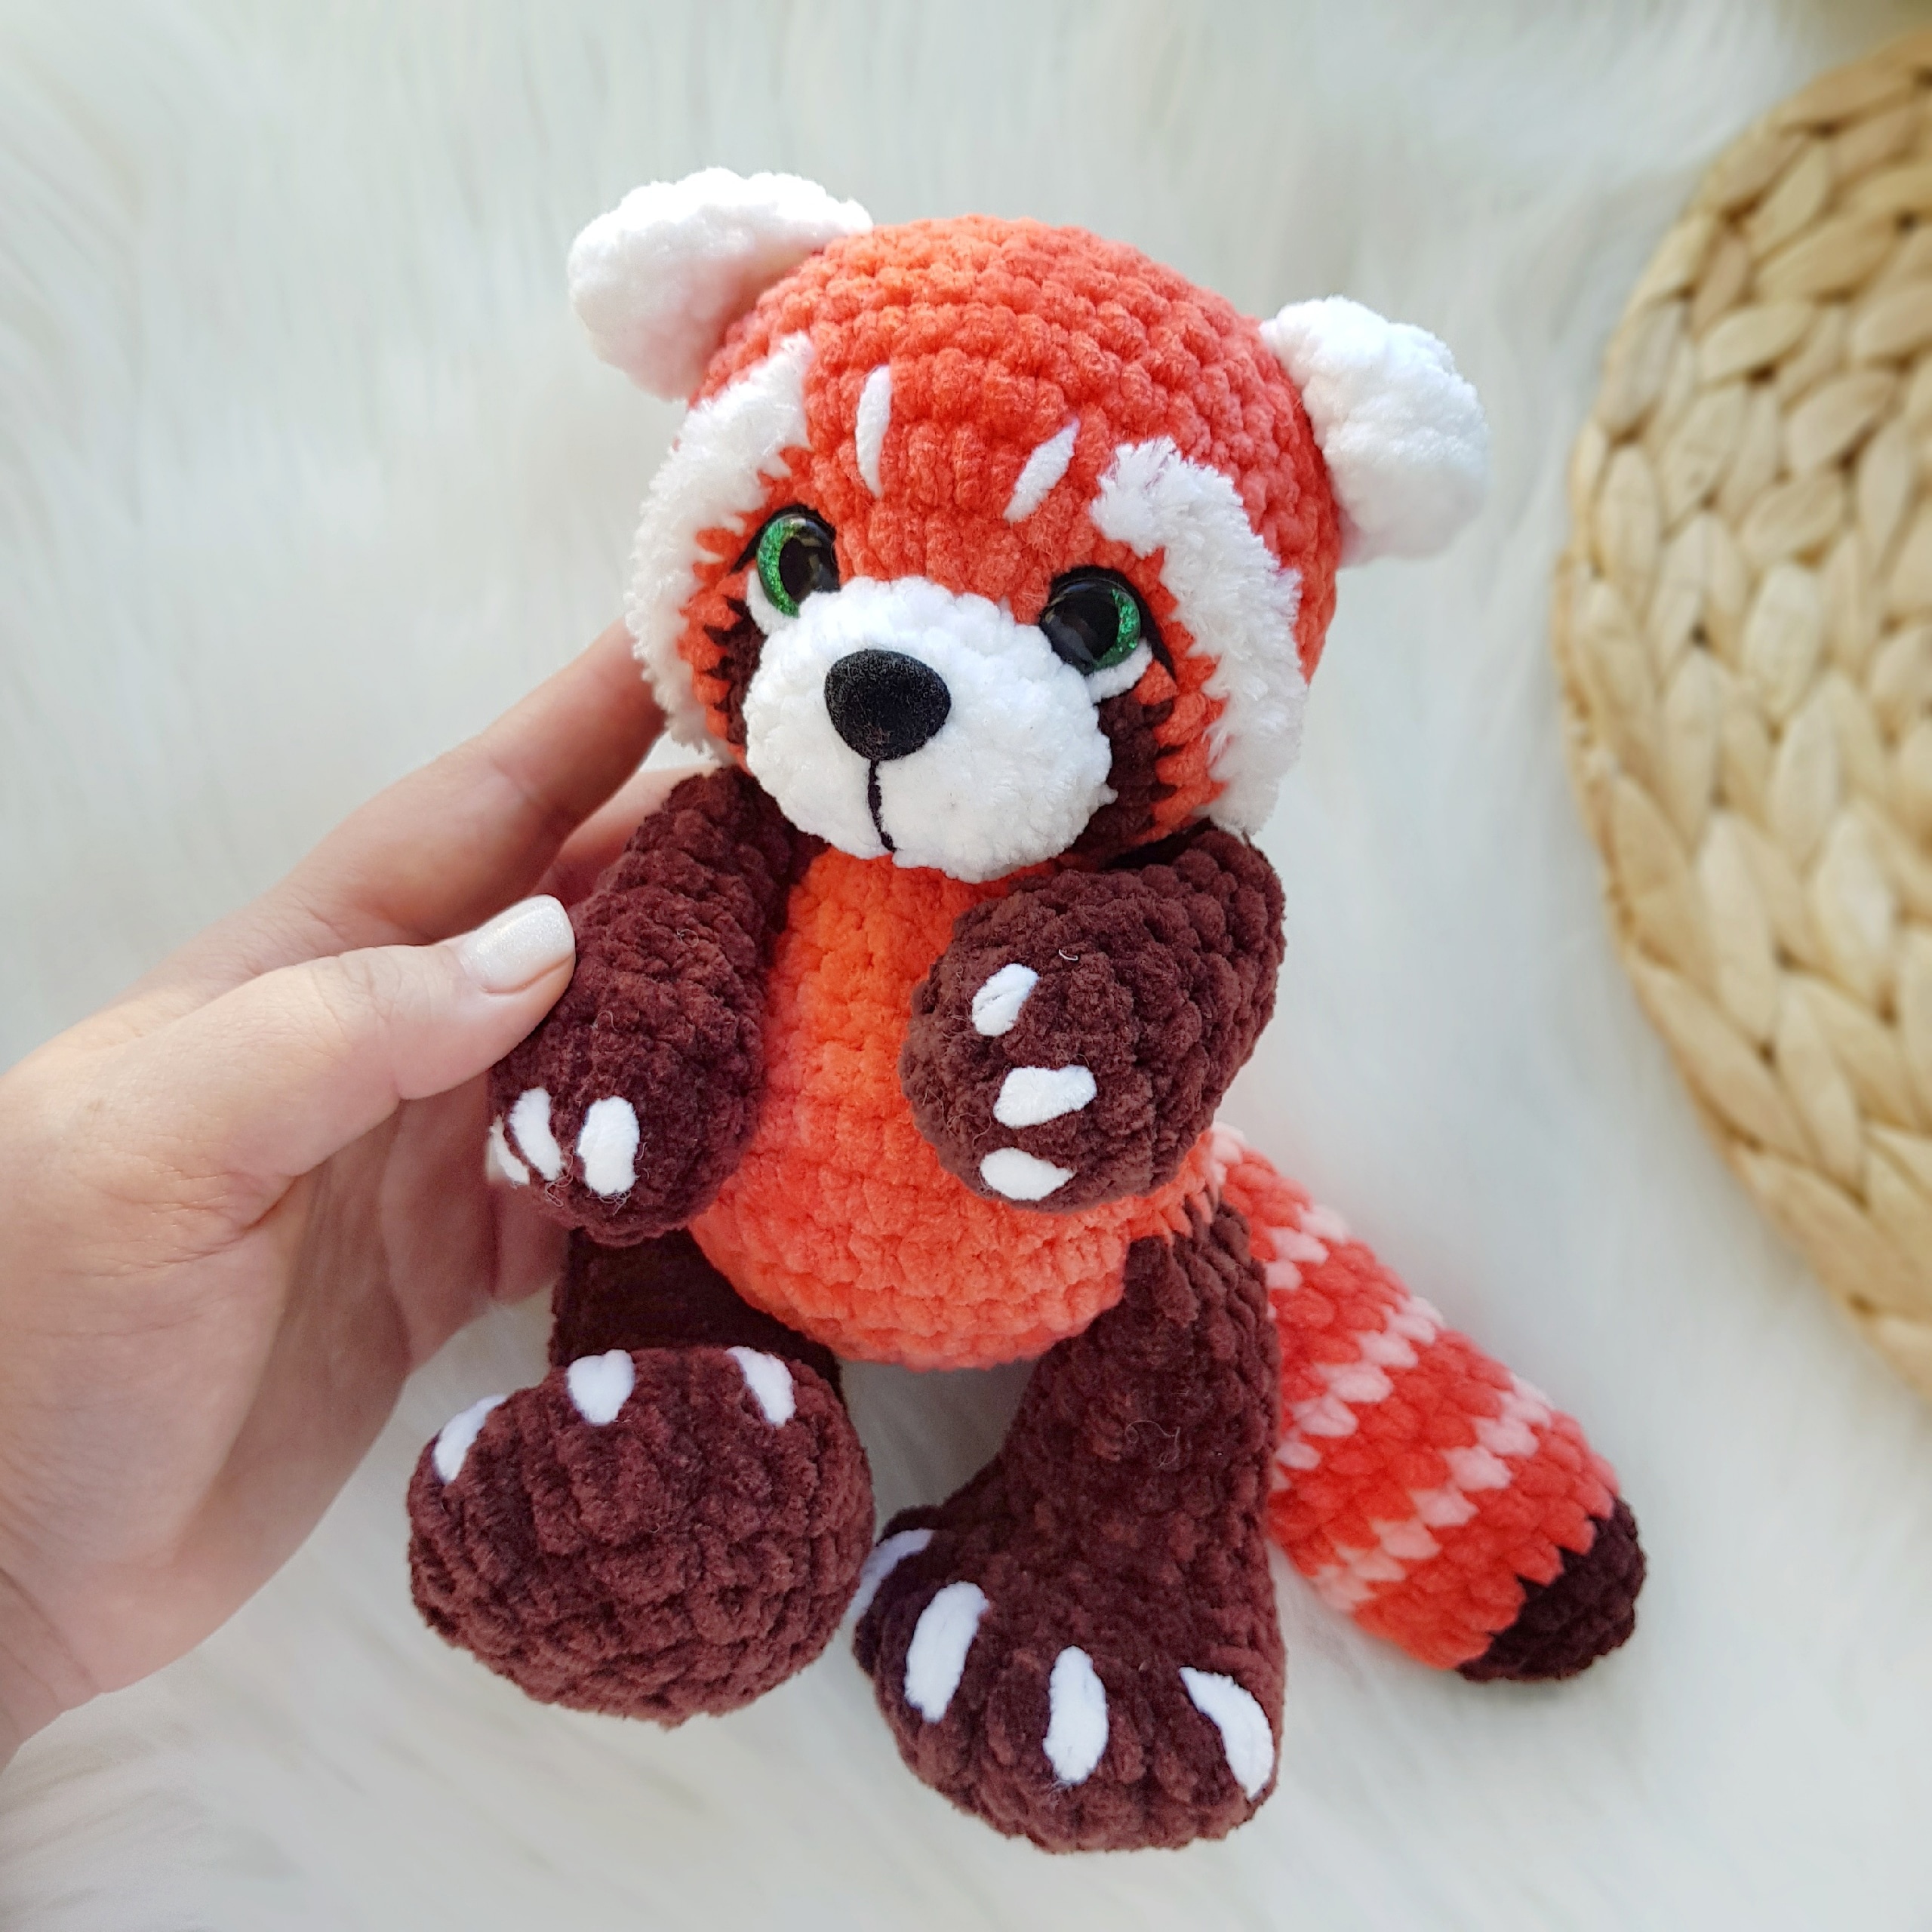 Red Panda Crochet Kit & Pattern, Beginner Crochet Kit